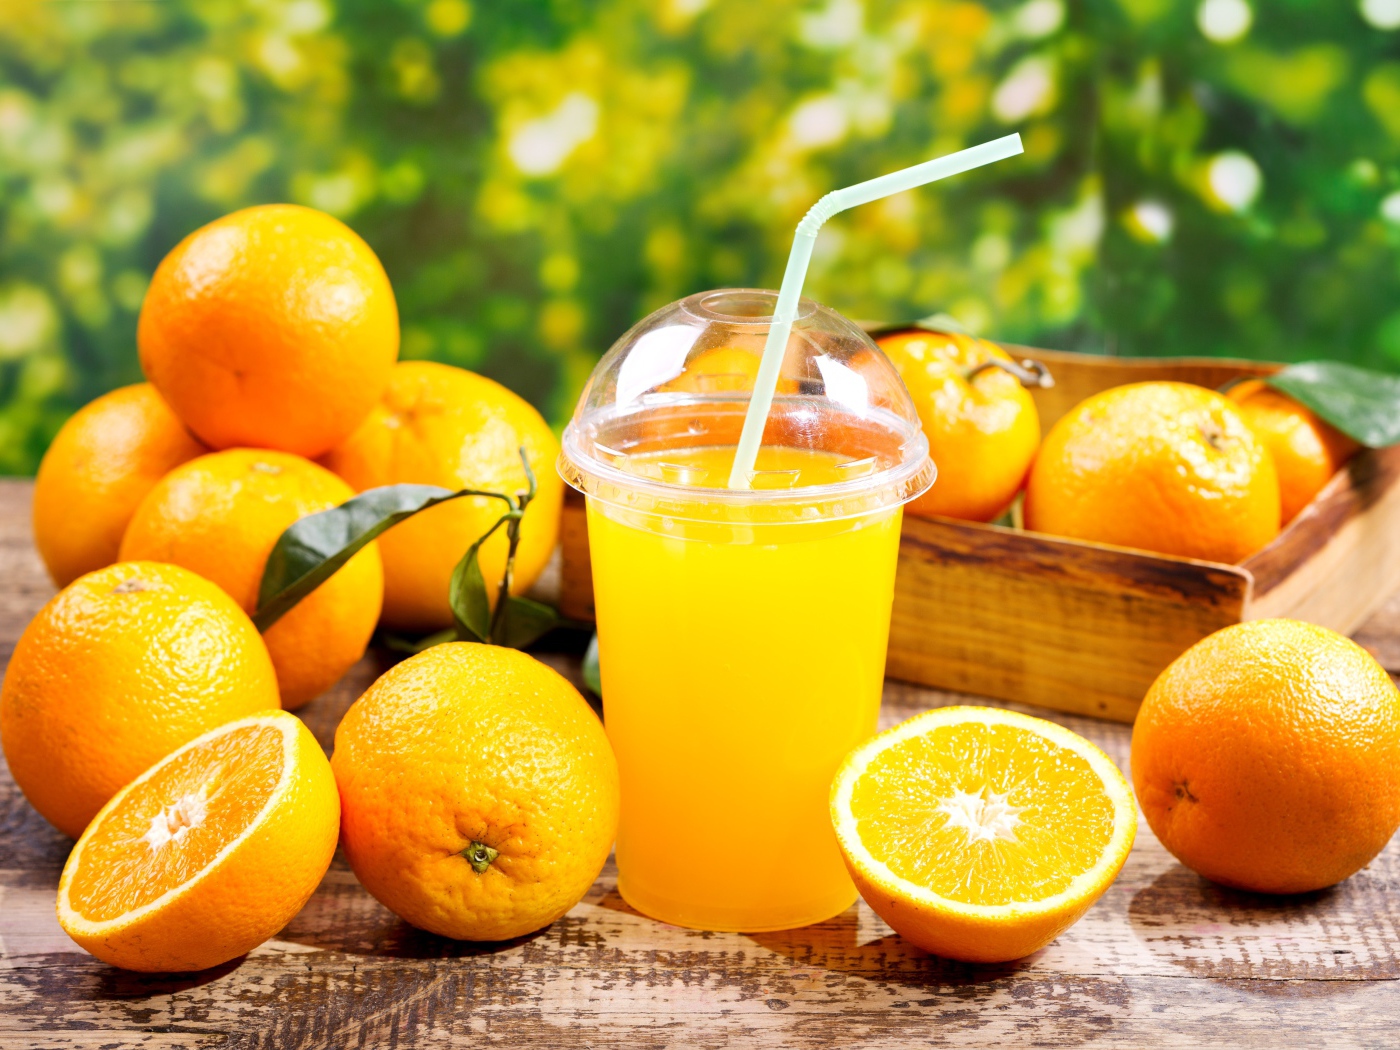 Стакан апельсинового сока с трубочкой на столе со свежими апельсинами